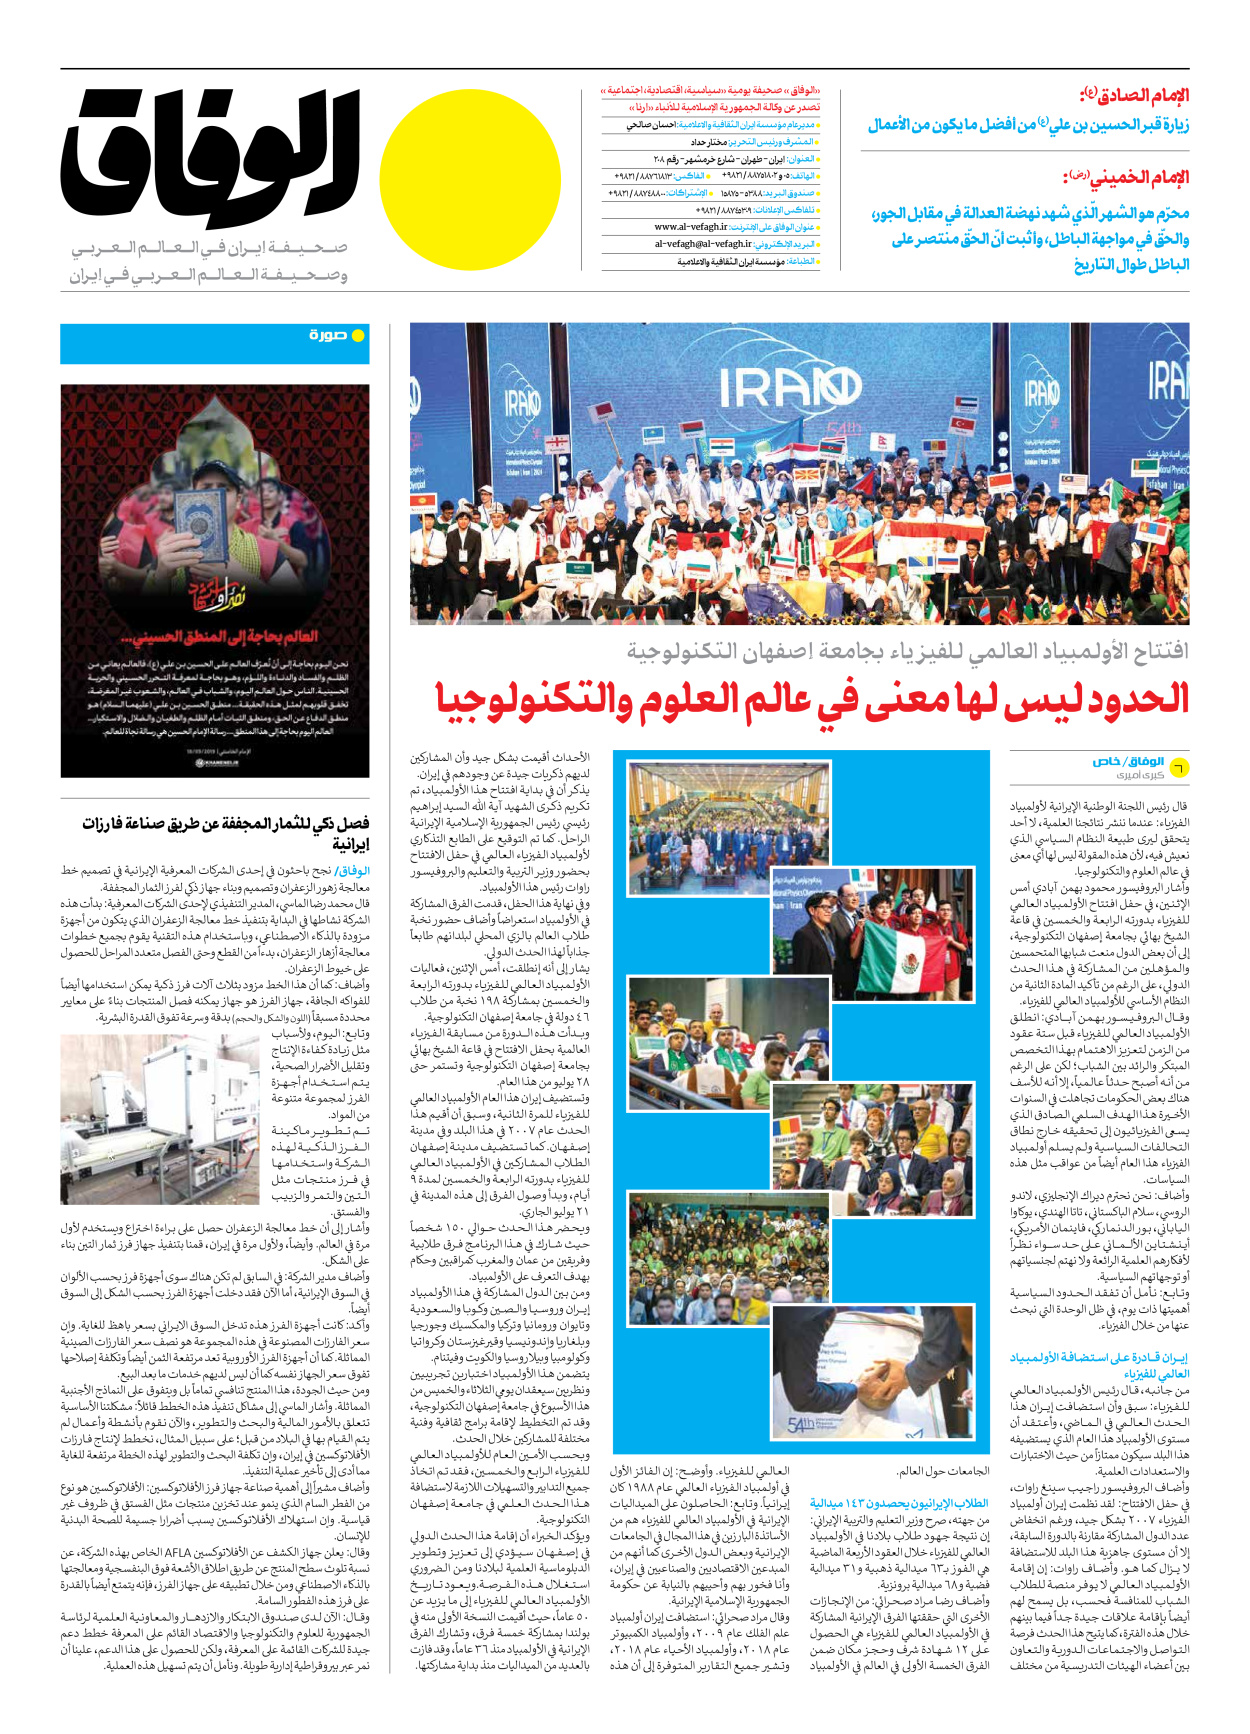 صحیفة ایران الدولیة الوفاق - العدد سبعة آلاف وخمسمائة وخمسون - ٢٣ يوليو ٢٠٢٤ - الصفحة ۸